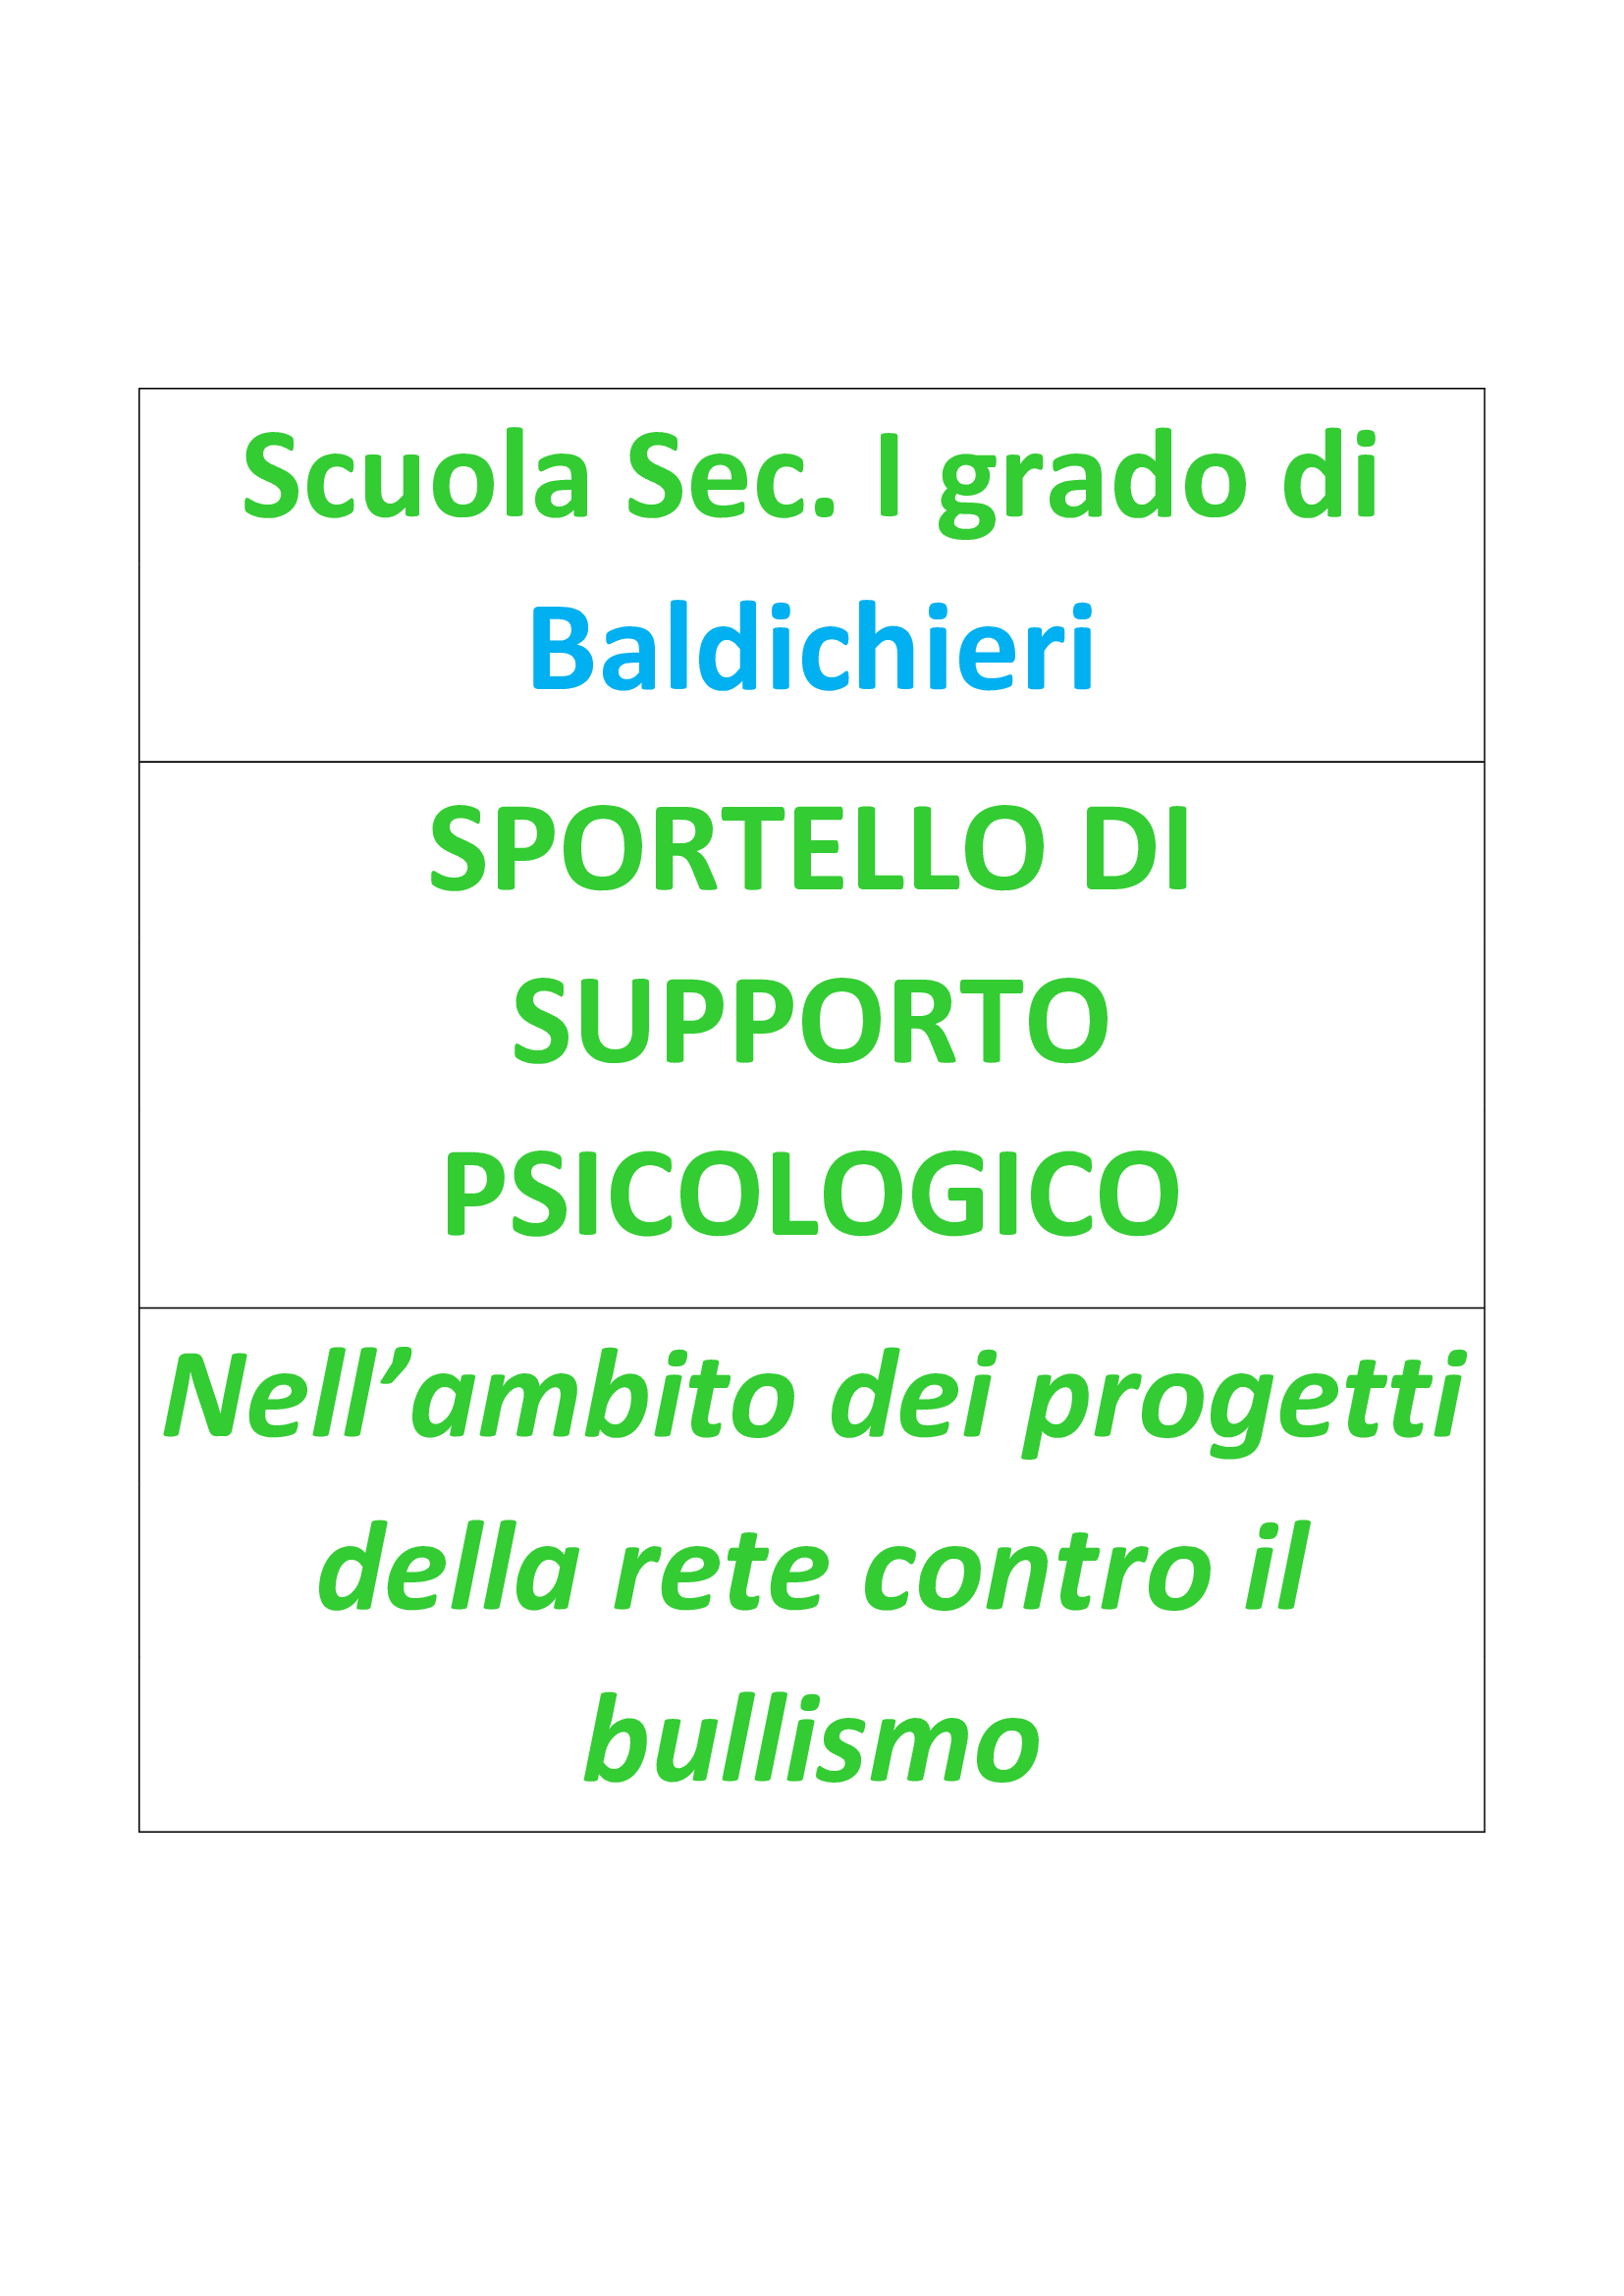 Sportello-psicologico-bulli.png